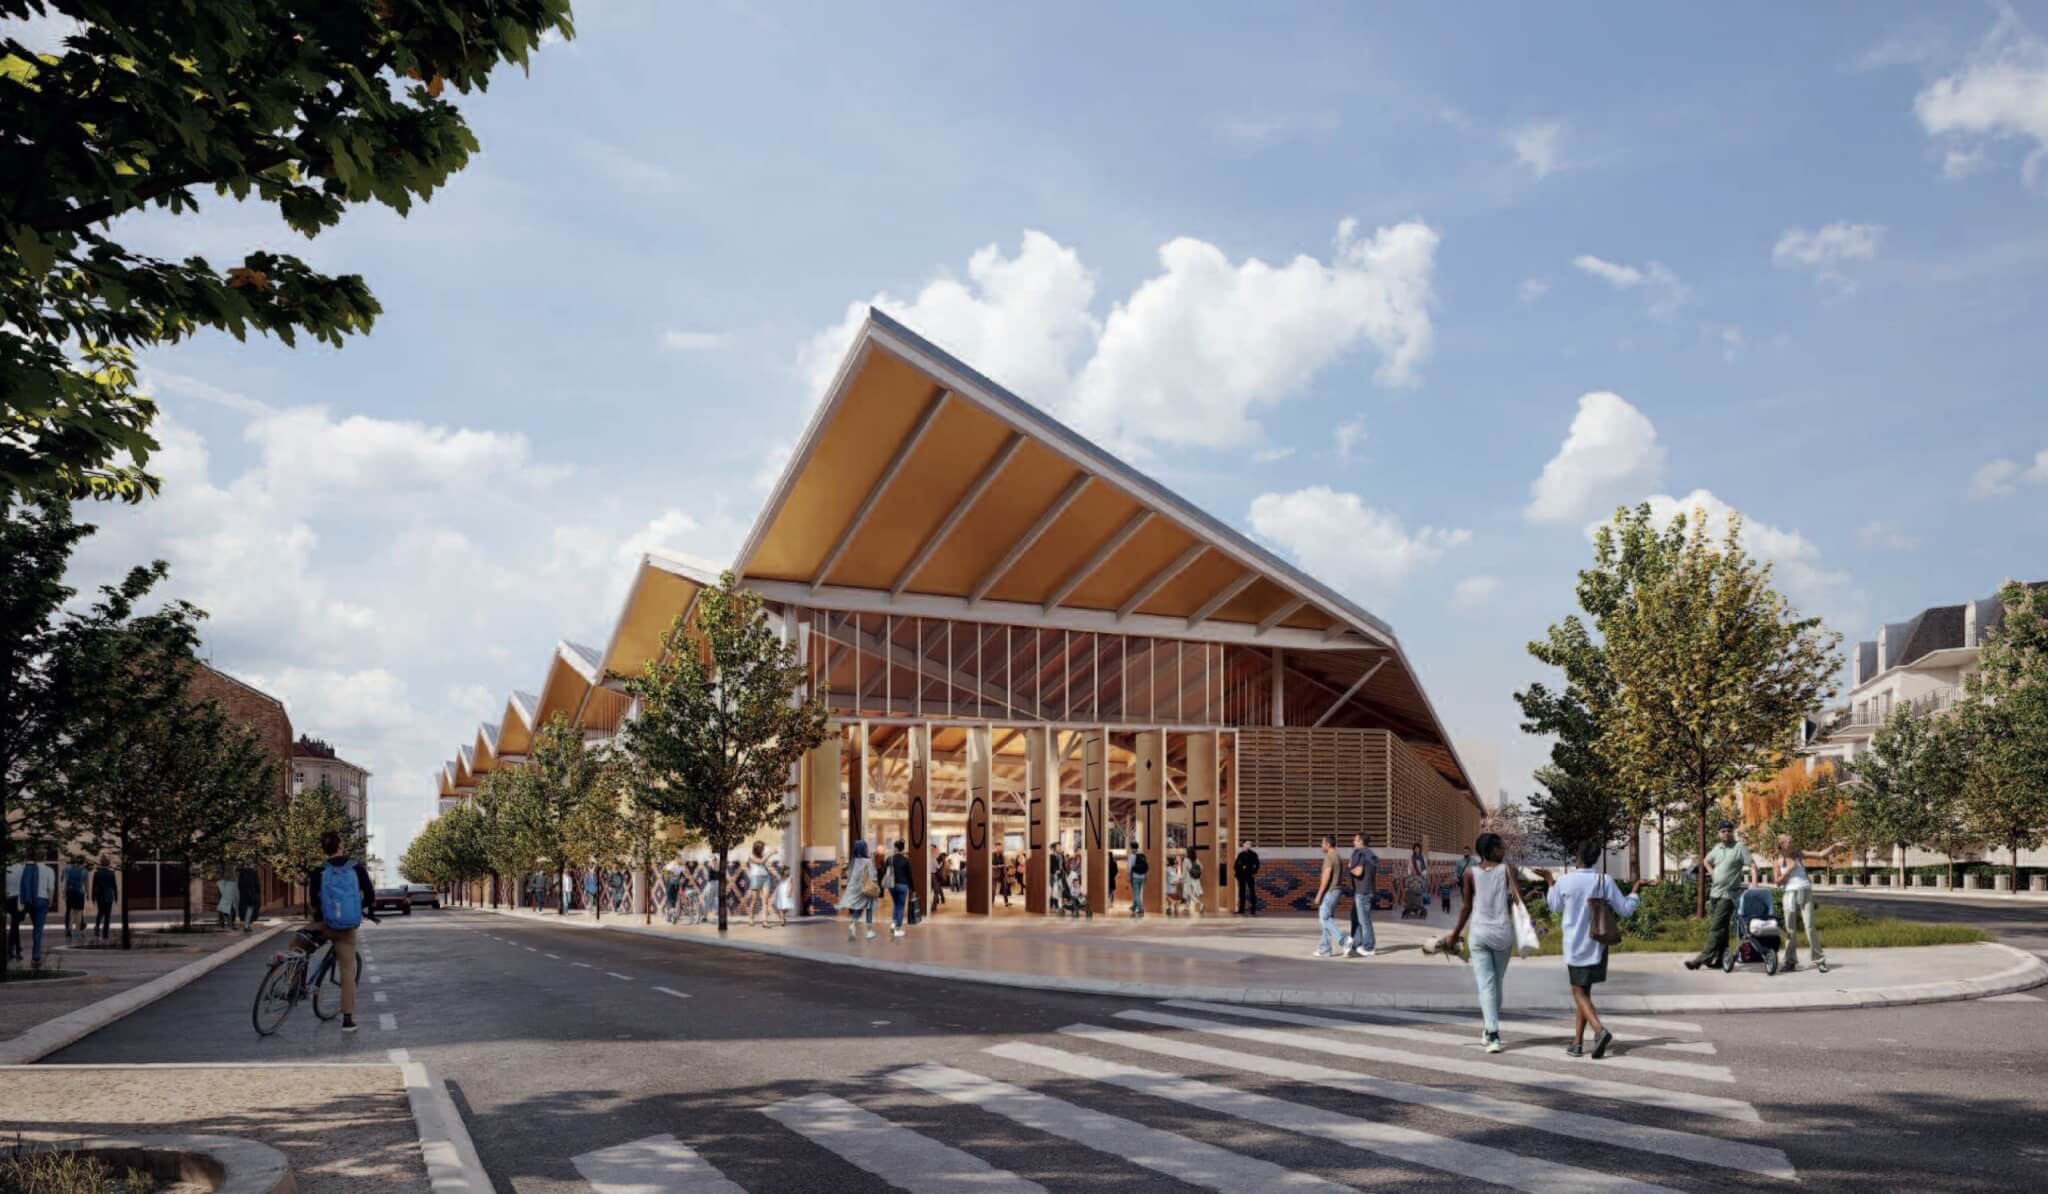 En images: quatre projets en concurrence pour le futur marché de Nogent-sur-Marne